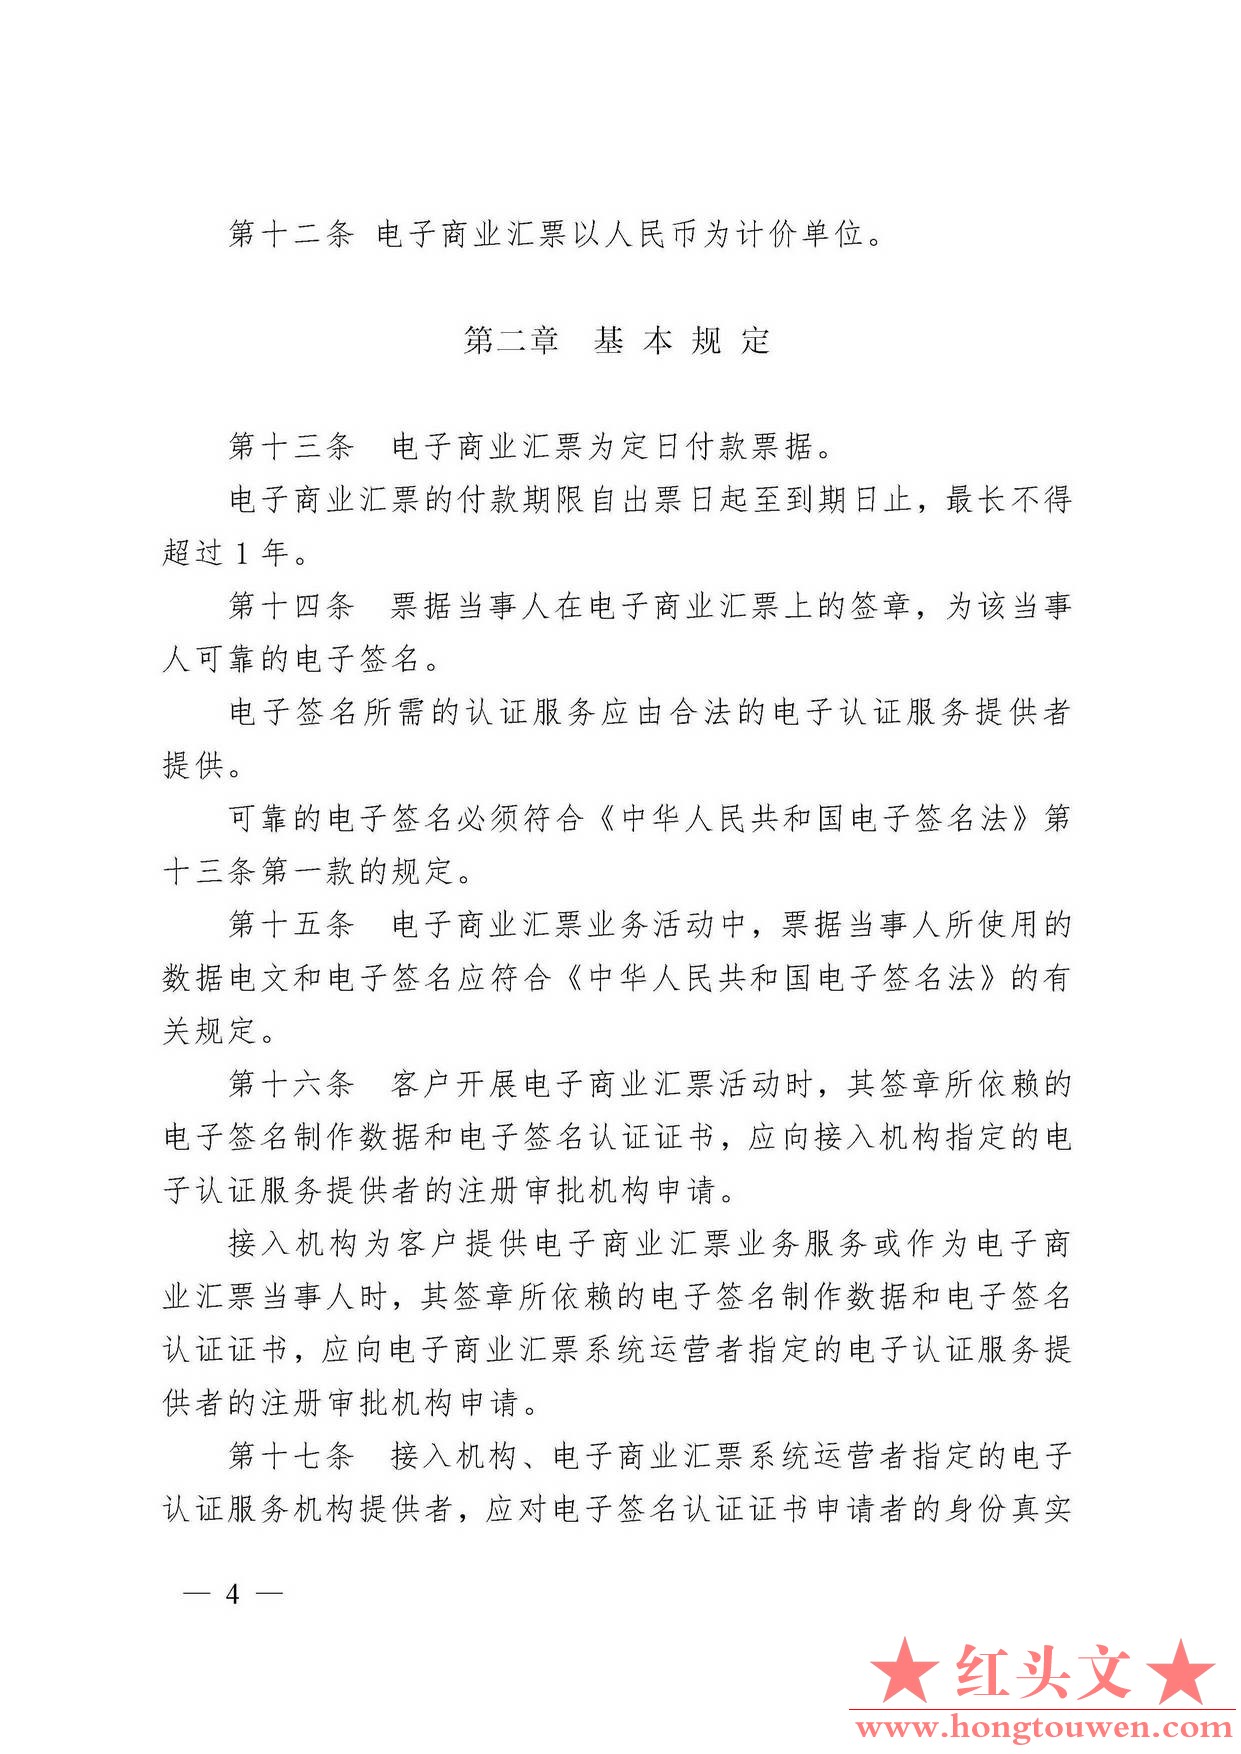 中国人民银行令[2009]2号-电子商业汇票管理办法_页面_04.jpg